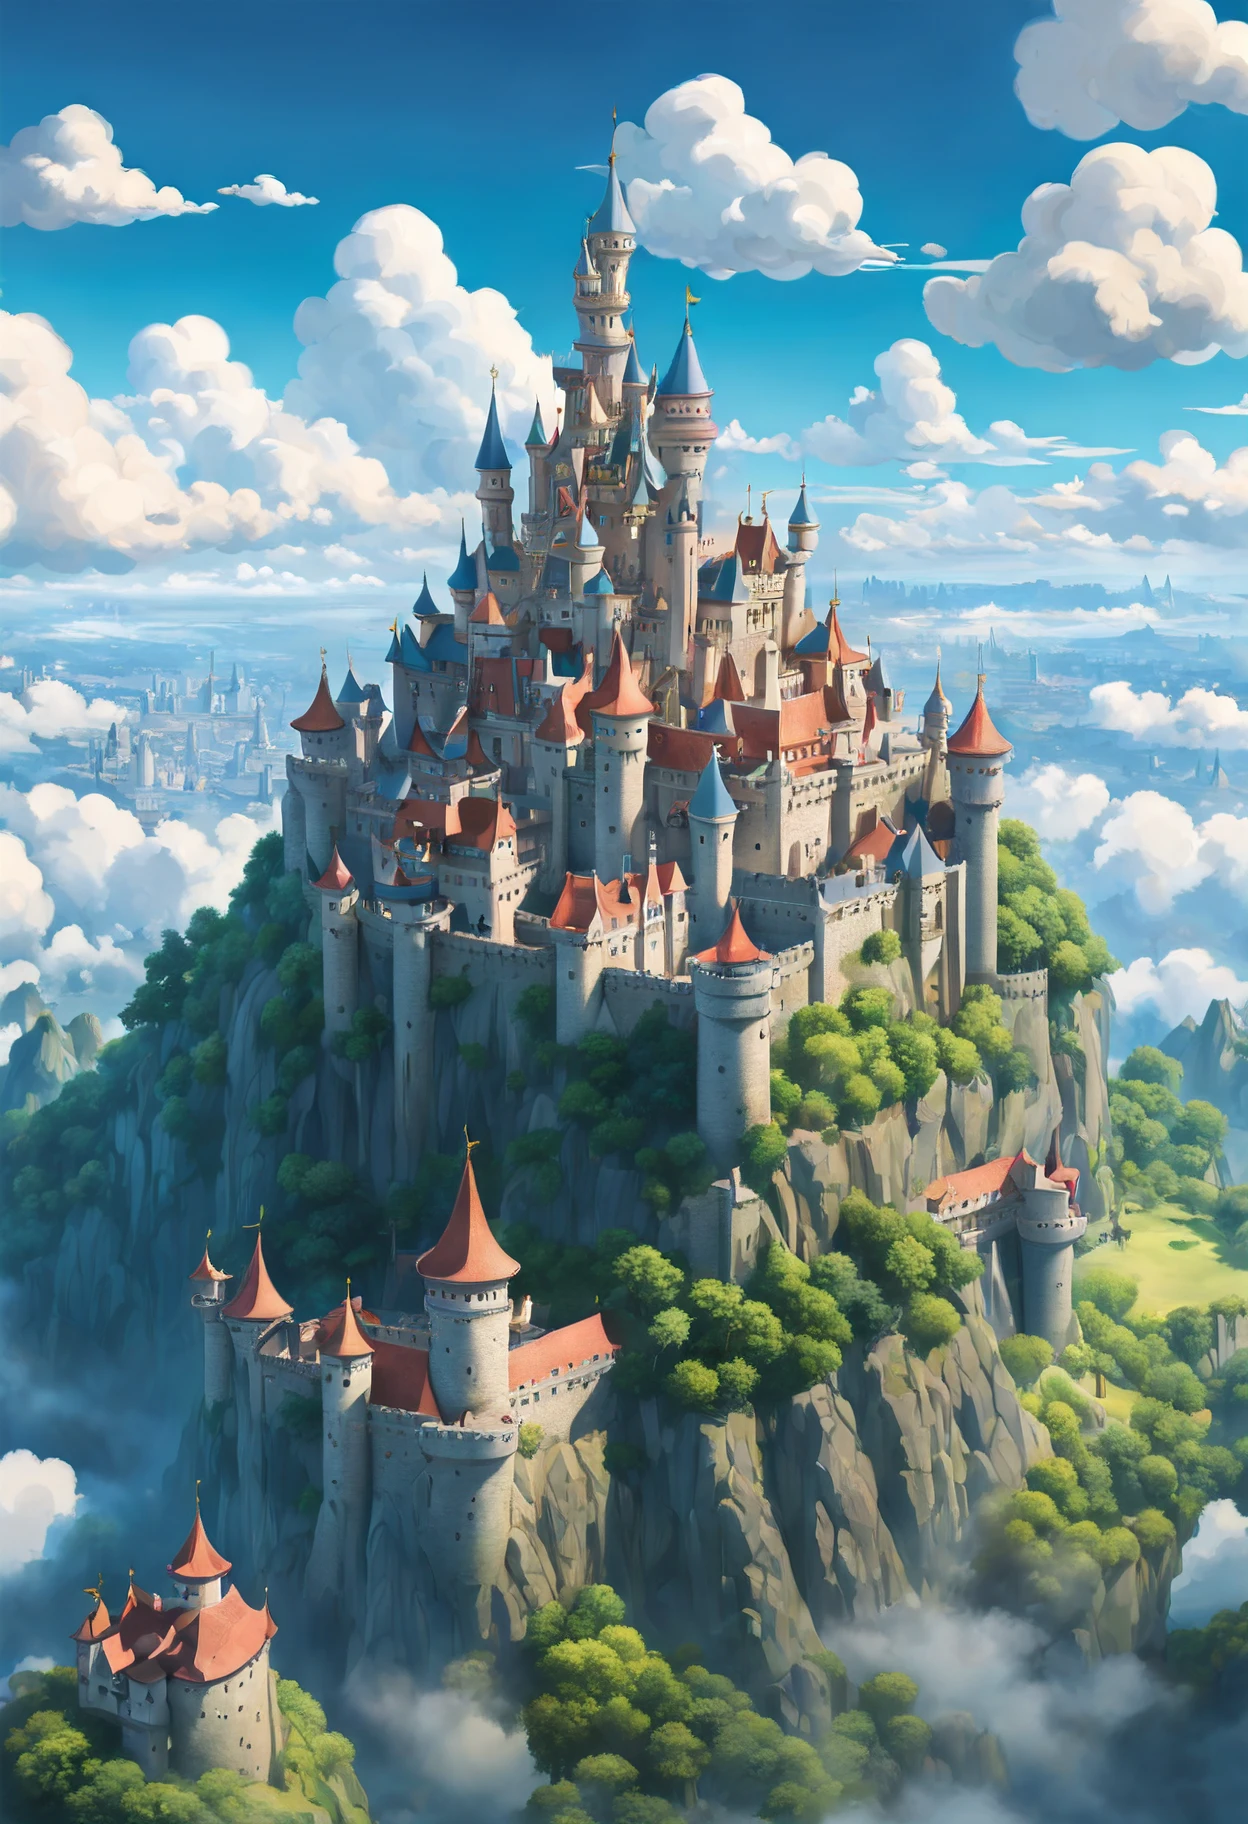 Une fusion du style artistique de Hayao Miyazaki et du Studio Ghibli, [château|forteresse du ciel], planant au milieu des nuages, vue splendide sur un (royaume animé dans le ciel:1.5), vu à travers la lentille d&#39;un (drone:1.2), capturé en vif, panoramique 8K, peint avec des couleurs fantaisistes, situé dans un (après midi ensoleillé), featuring meticulous details of the château architecture, capturer l&#39;essence d&#39;un style onirique et mdjrny-v4, éclairage nostalgique créant un charme vintage, souligné par un [(Steven Spielberg:1.2) magie cinématographique inspirée], détails complexes rappelant le style de Claude Monet et Vincent van Gogh, un conte de fées qui prend vie dans un (téléobjectif) tir